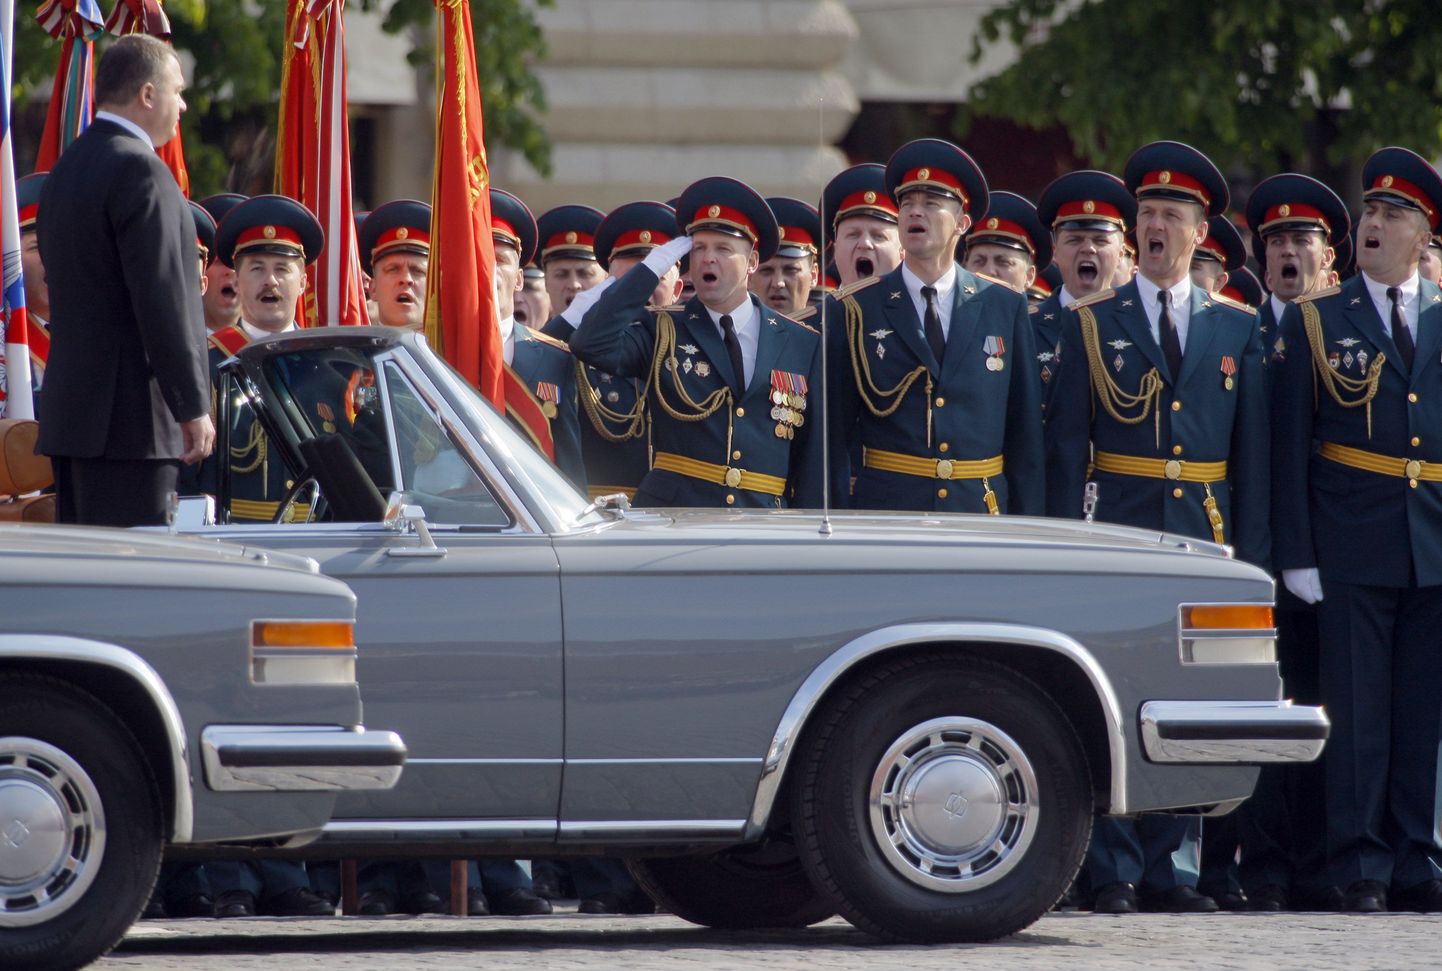 Vene sõjaväeohvitserid tervitavad Ziliga Moskva Punasel väljakul sõitvat kaitseminister Anatoli Serdjukovi.